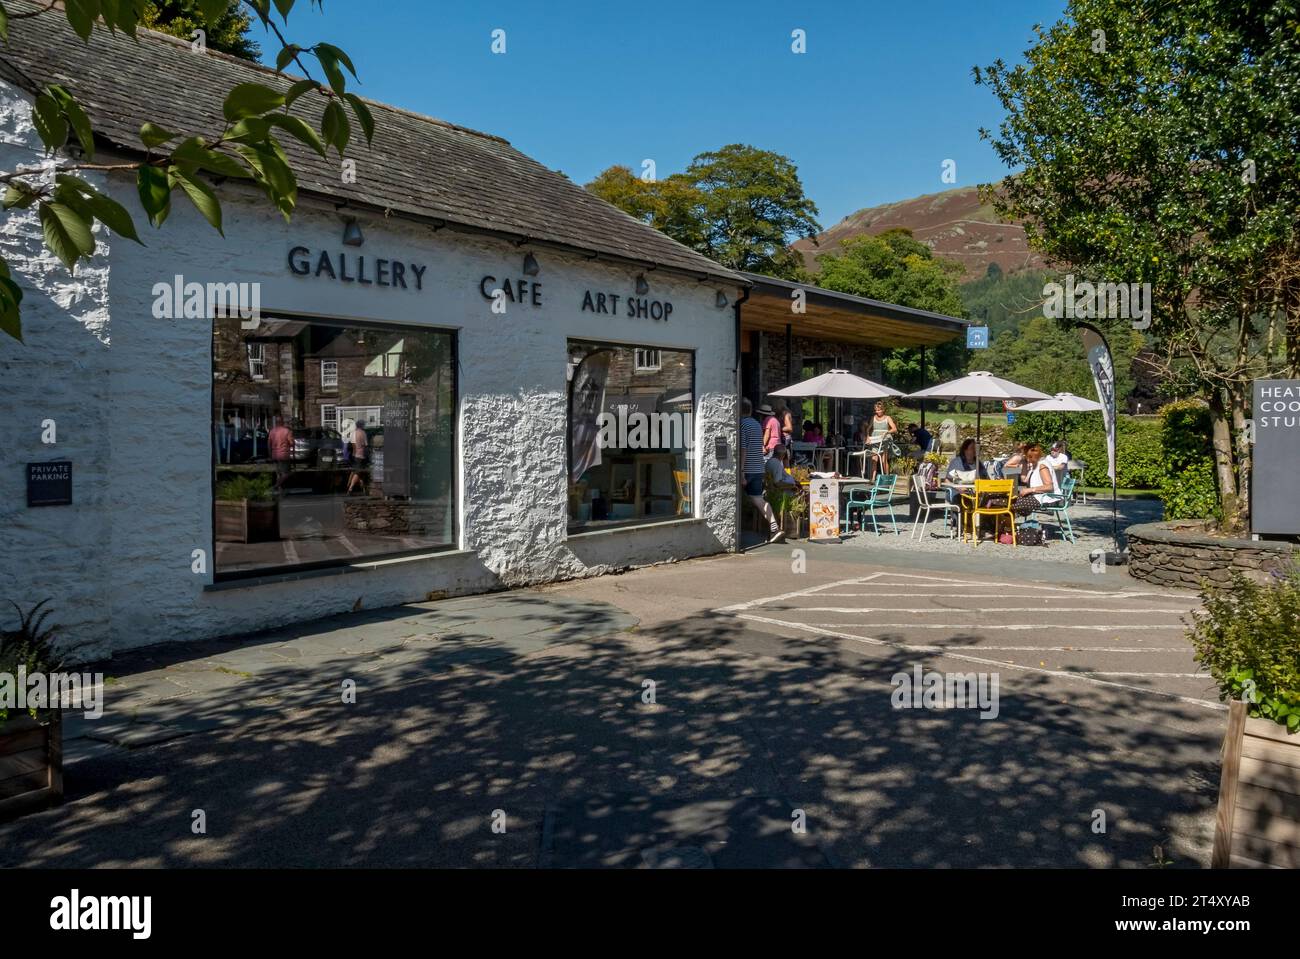 Personnes touristes visiteurs au café à l'extérieur Heaton Cooper Studio en été Grasmere village Cumbria Angleterre Royaume-Uni GB Grande-Bretagne Banque D'Images